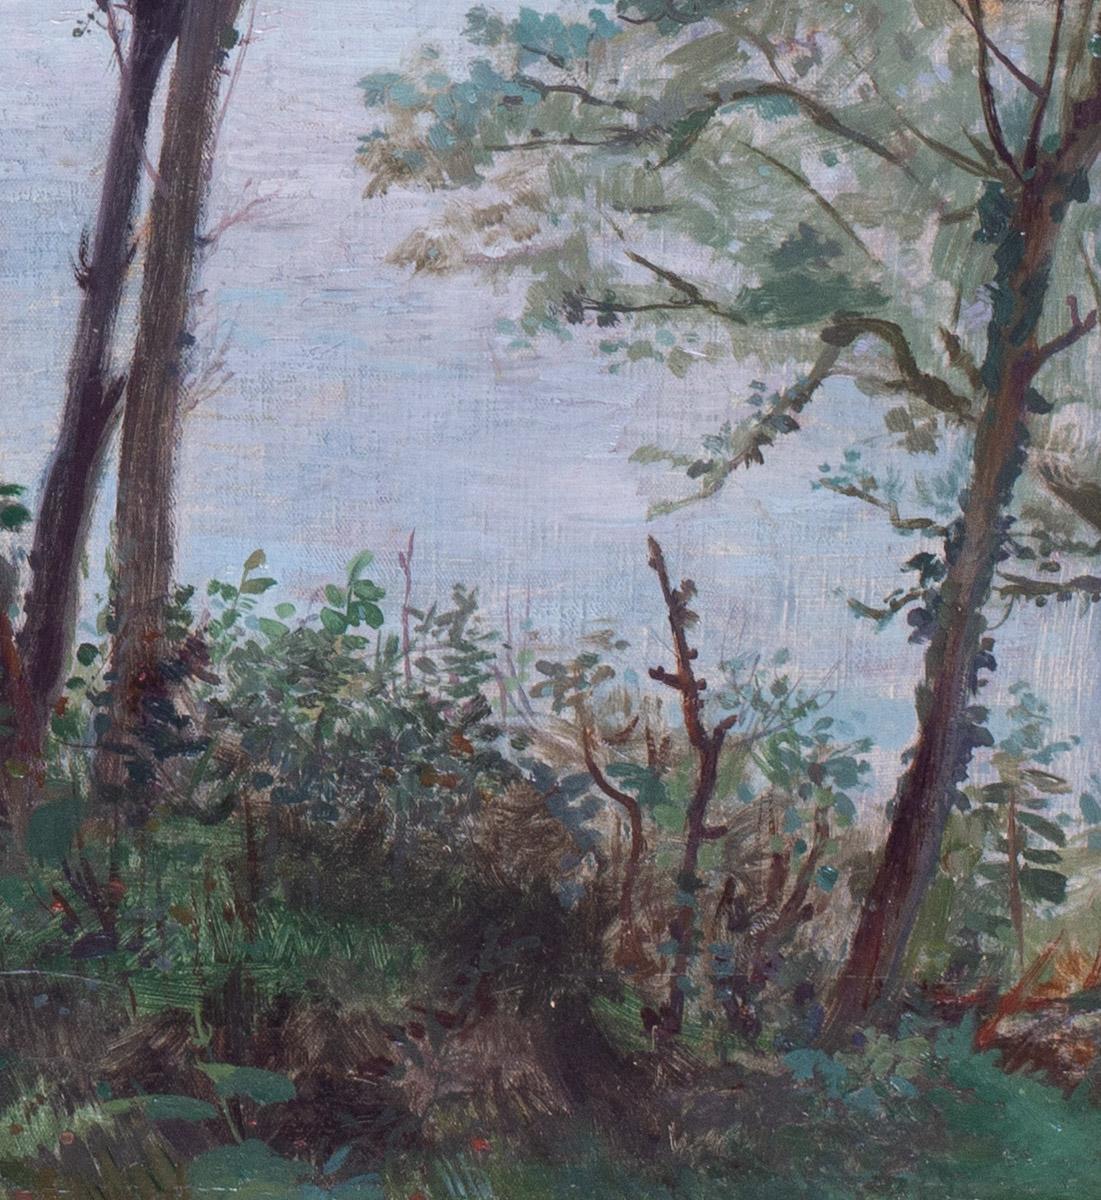 Eine schöne und sommerliche impressionistische Szene eines Mädchens, das unter einem grünen Blätterdach am Meer sitzt.

Eugene Habert (Franzose, 1842 - 1916)
Ein Mädchen und ihr Truthahn sind über der Bucht
Öl auf Leinwand
Signiert 'HABERT' (unten